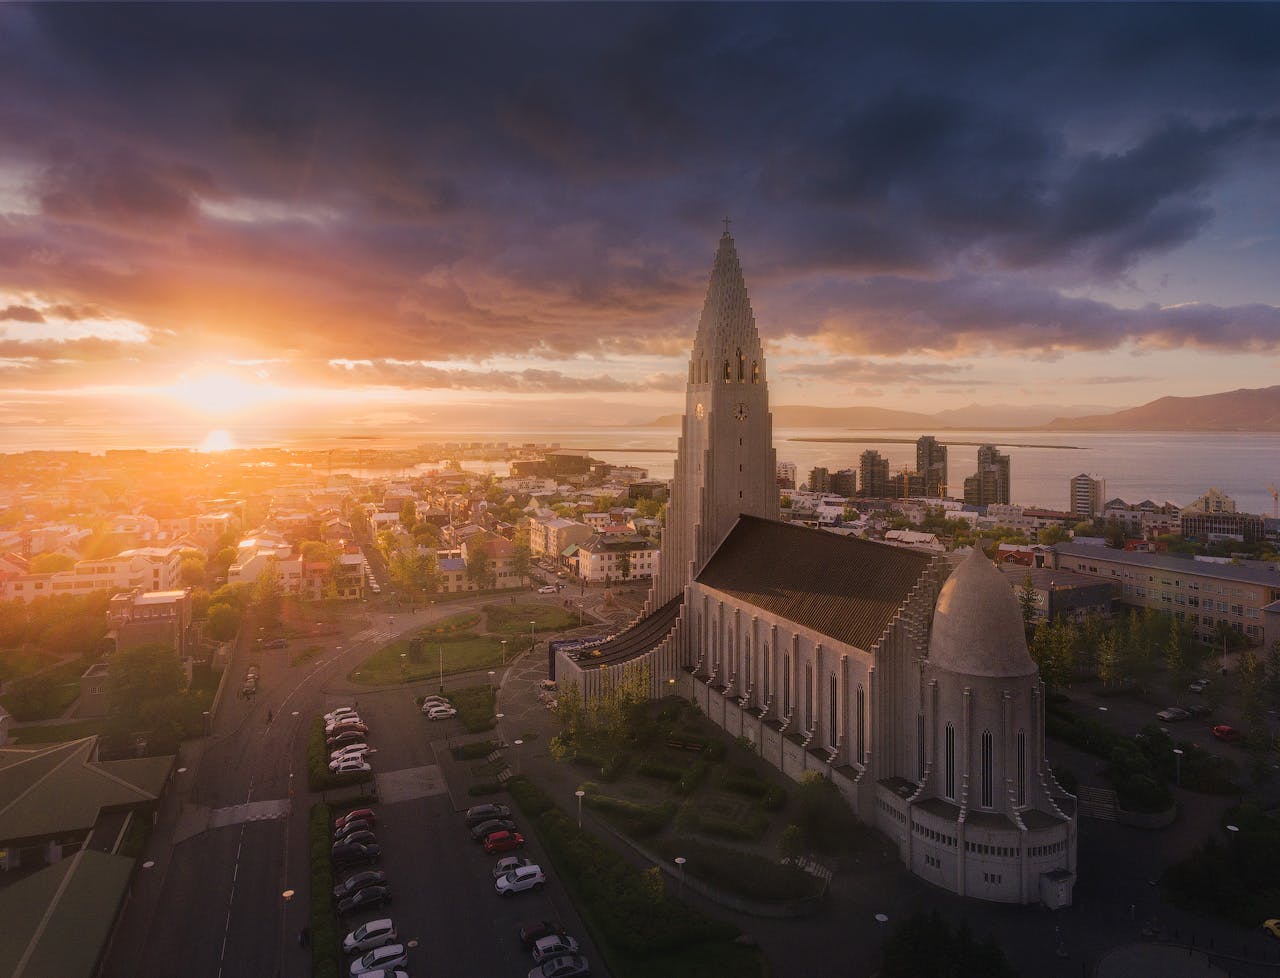 Reykjavíks vartegn, kirken Hallgrímskirkja badet i sommersolens stråler.